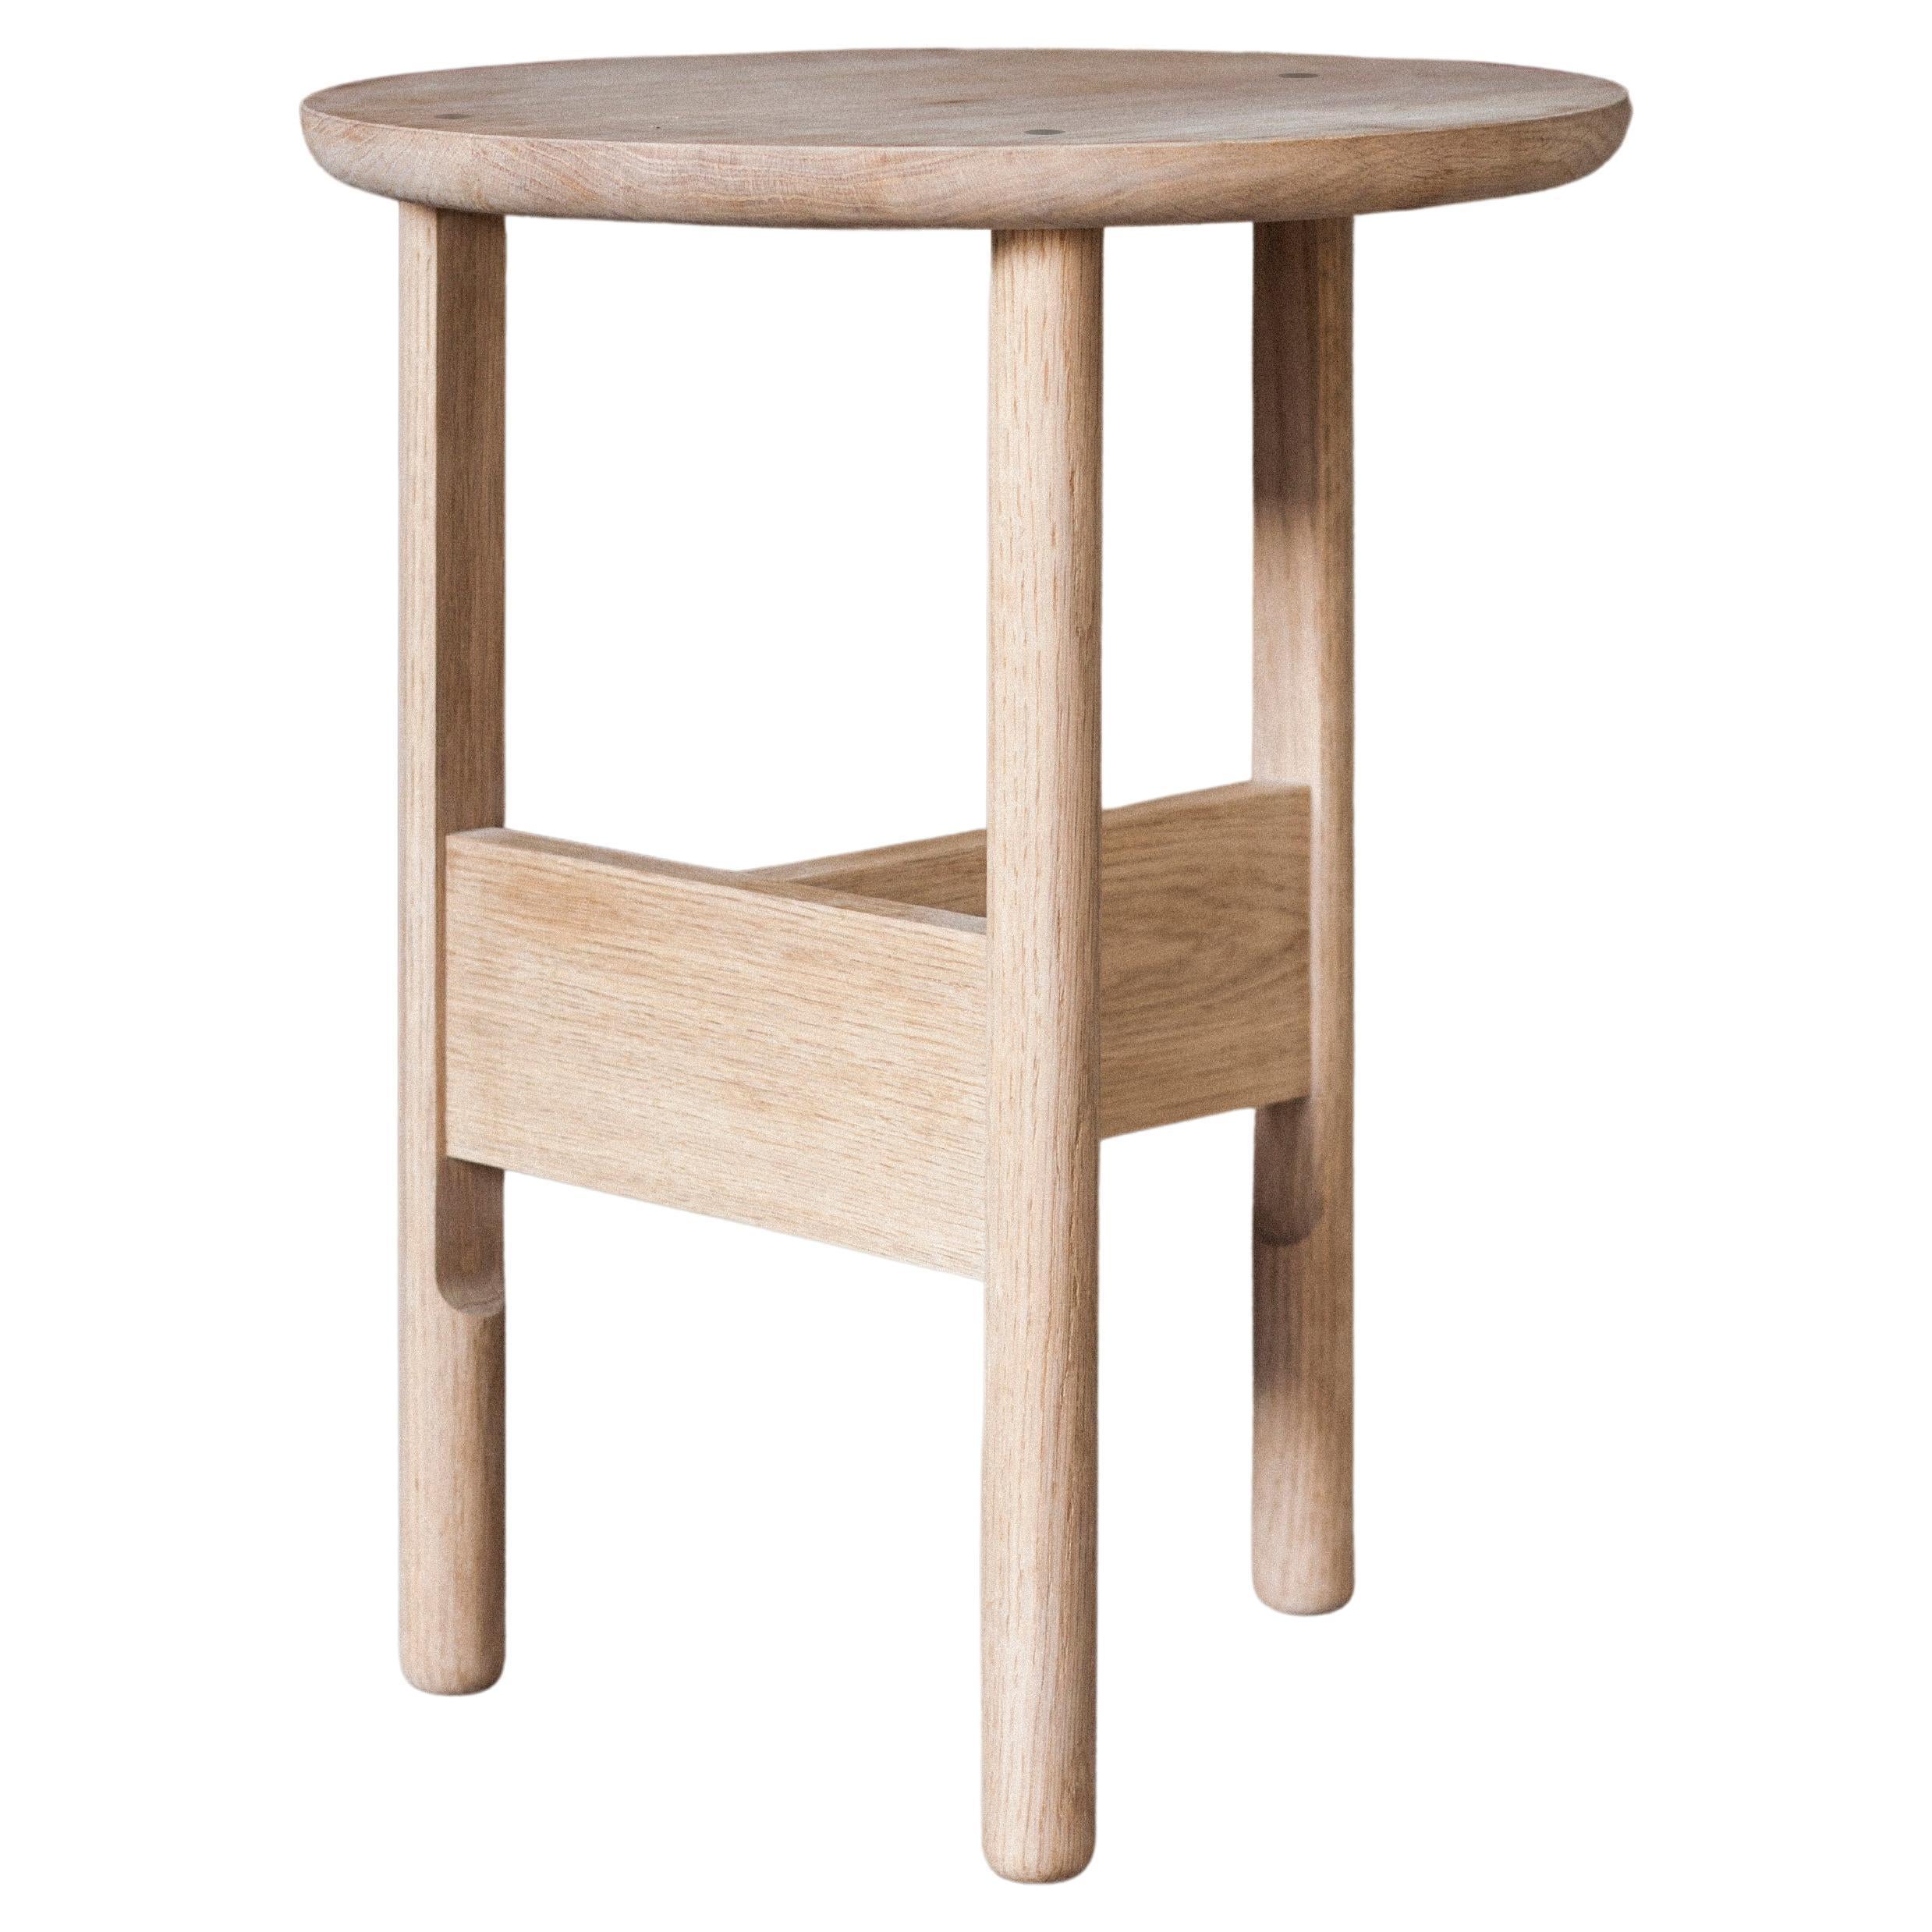 Handmade Hanne Side Table, Ø45cm - Oak - by BACD studio